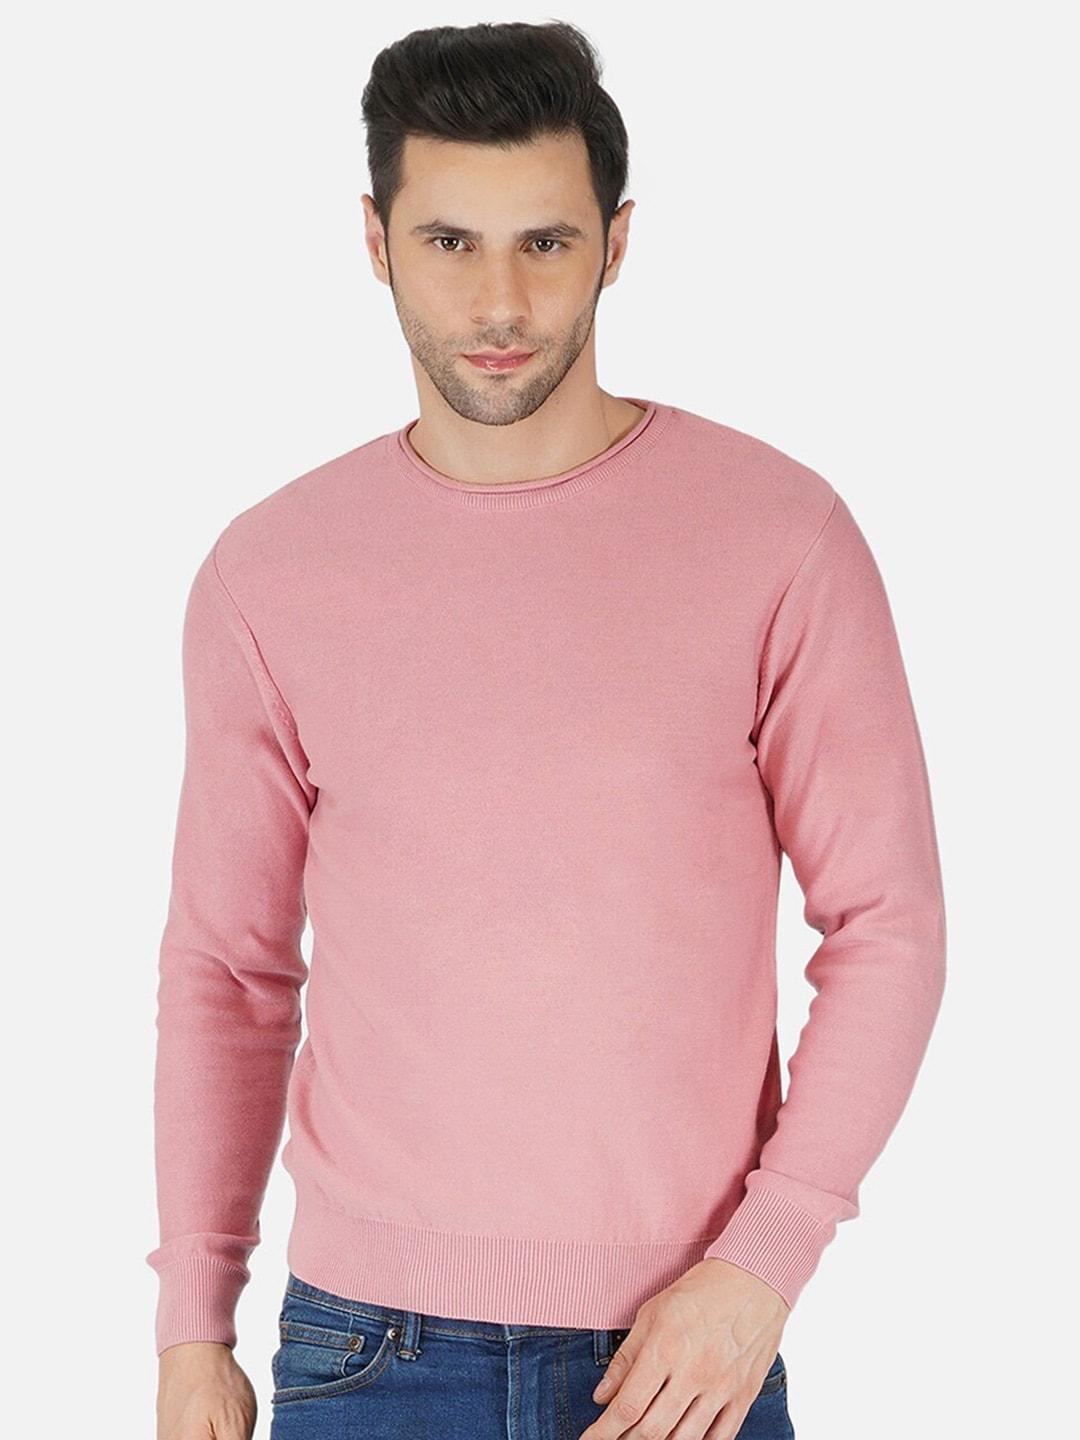 joe-hazel-men-pink-pullover